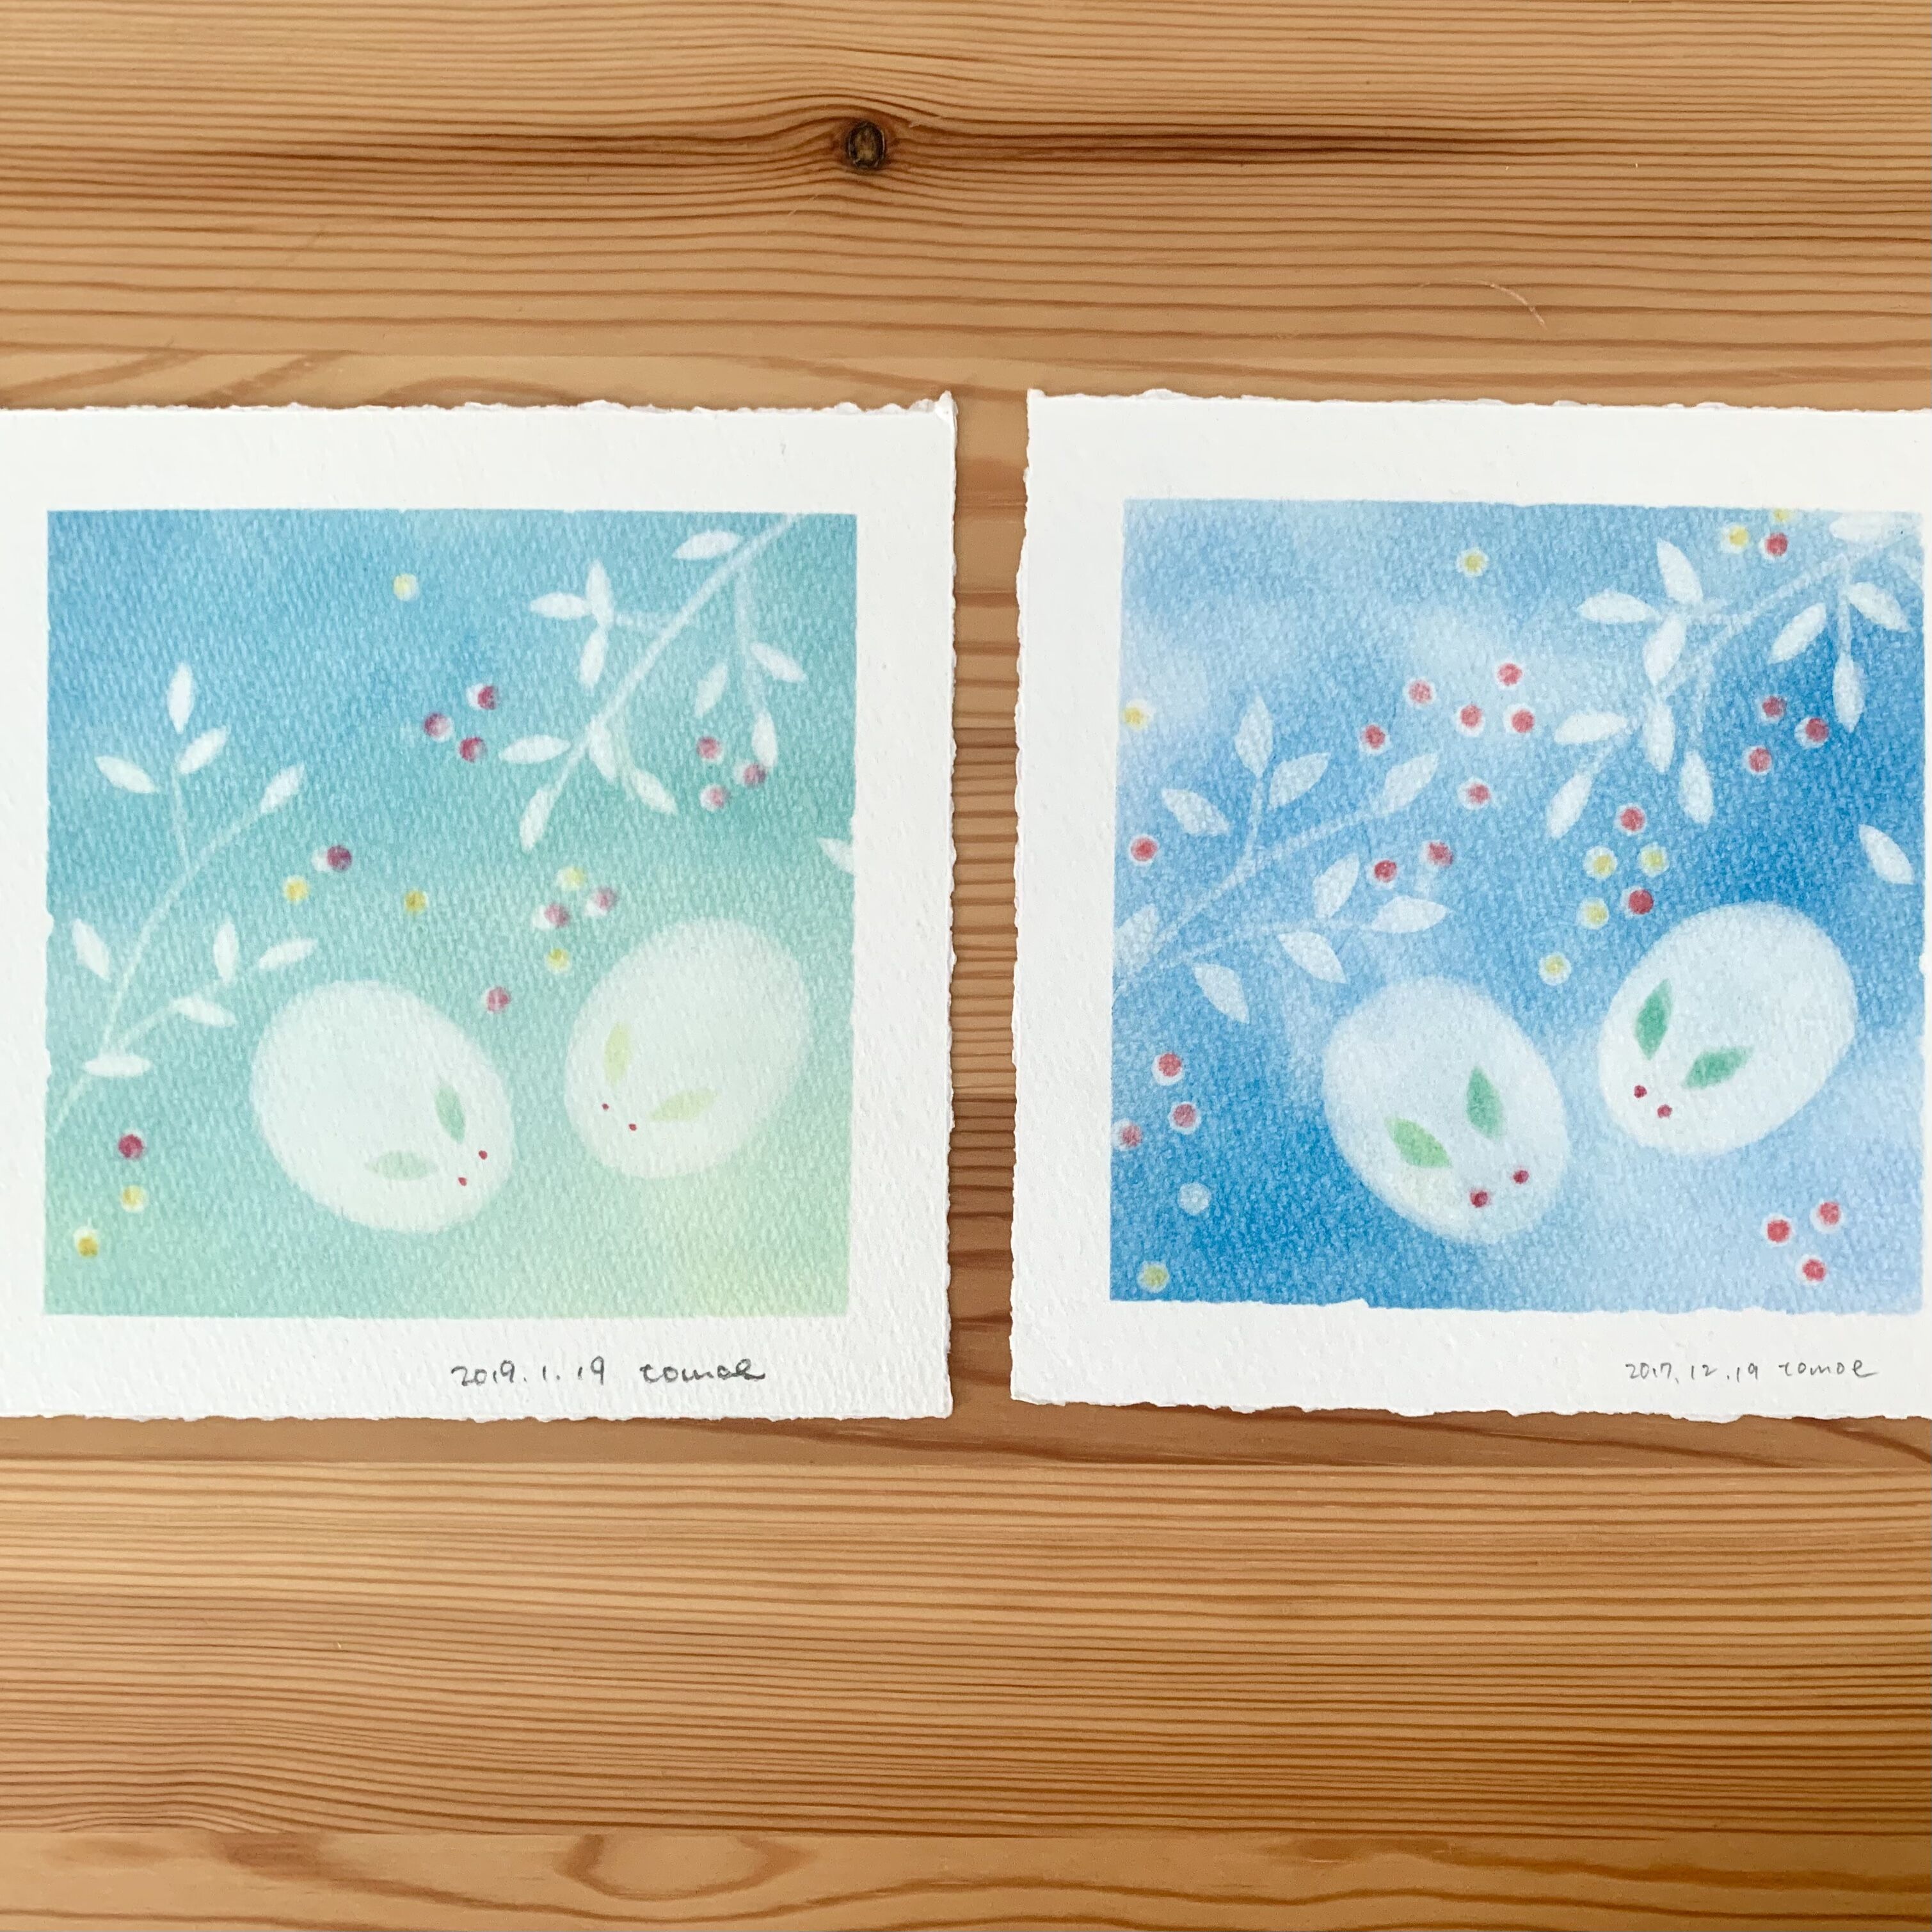  ＜季節のパステル＞パステルシャインアートで「あおぞらと大地・雪うさぎ」を描こうの写真2枚目